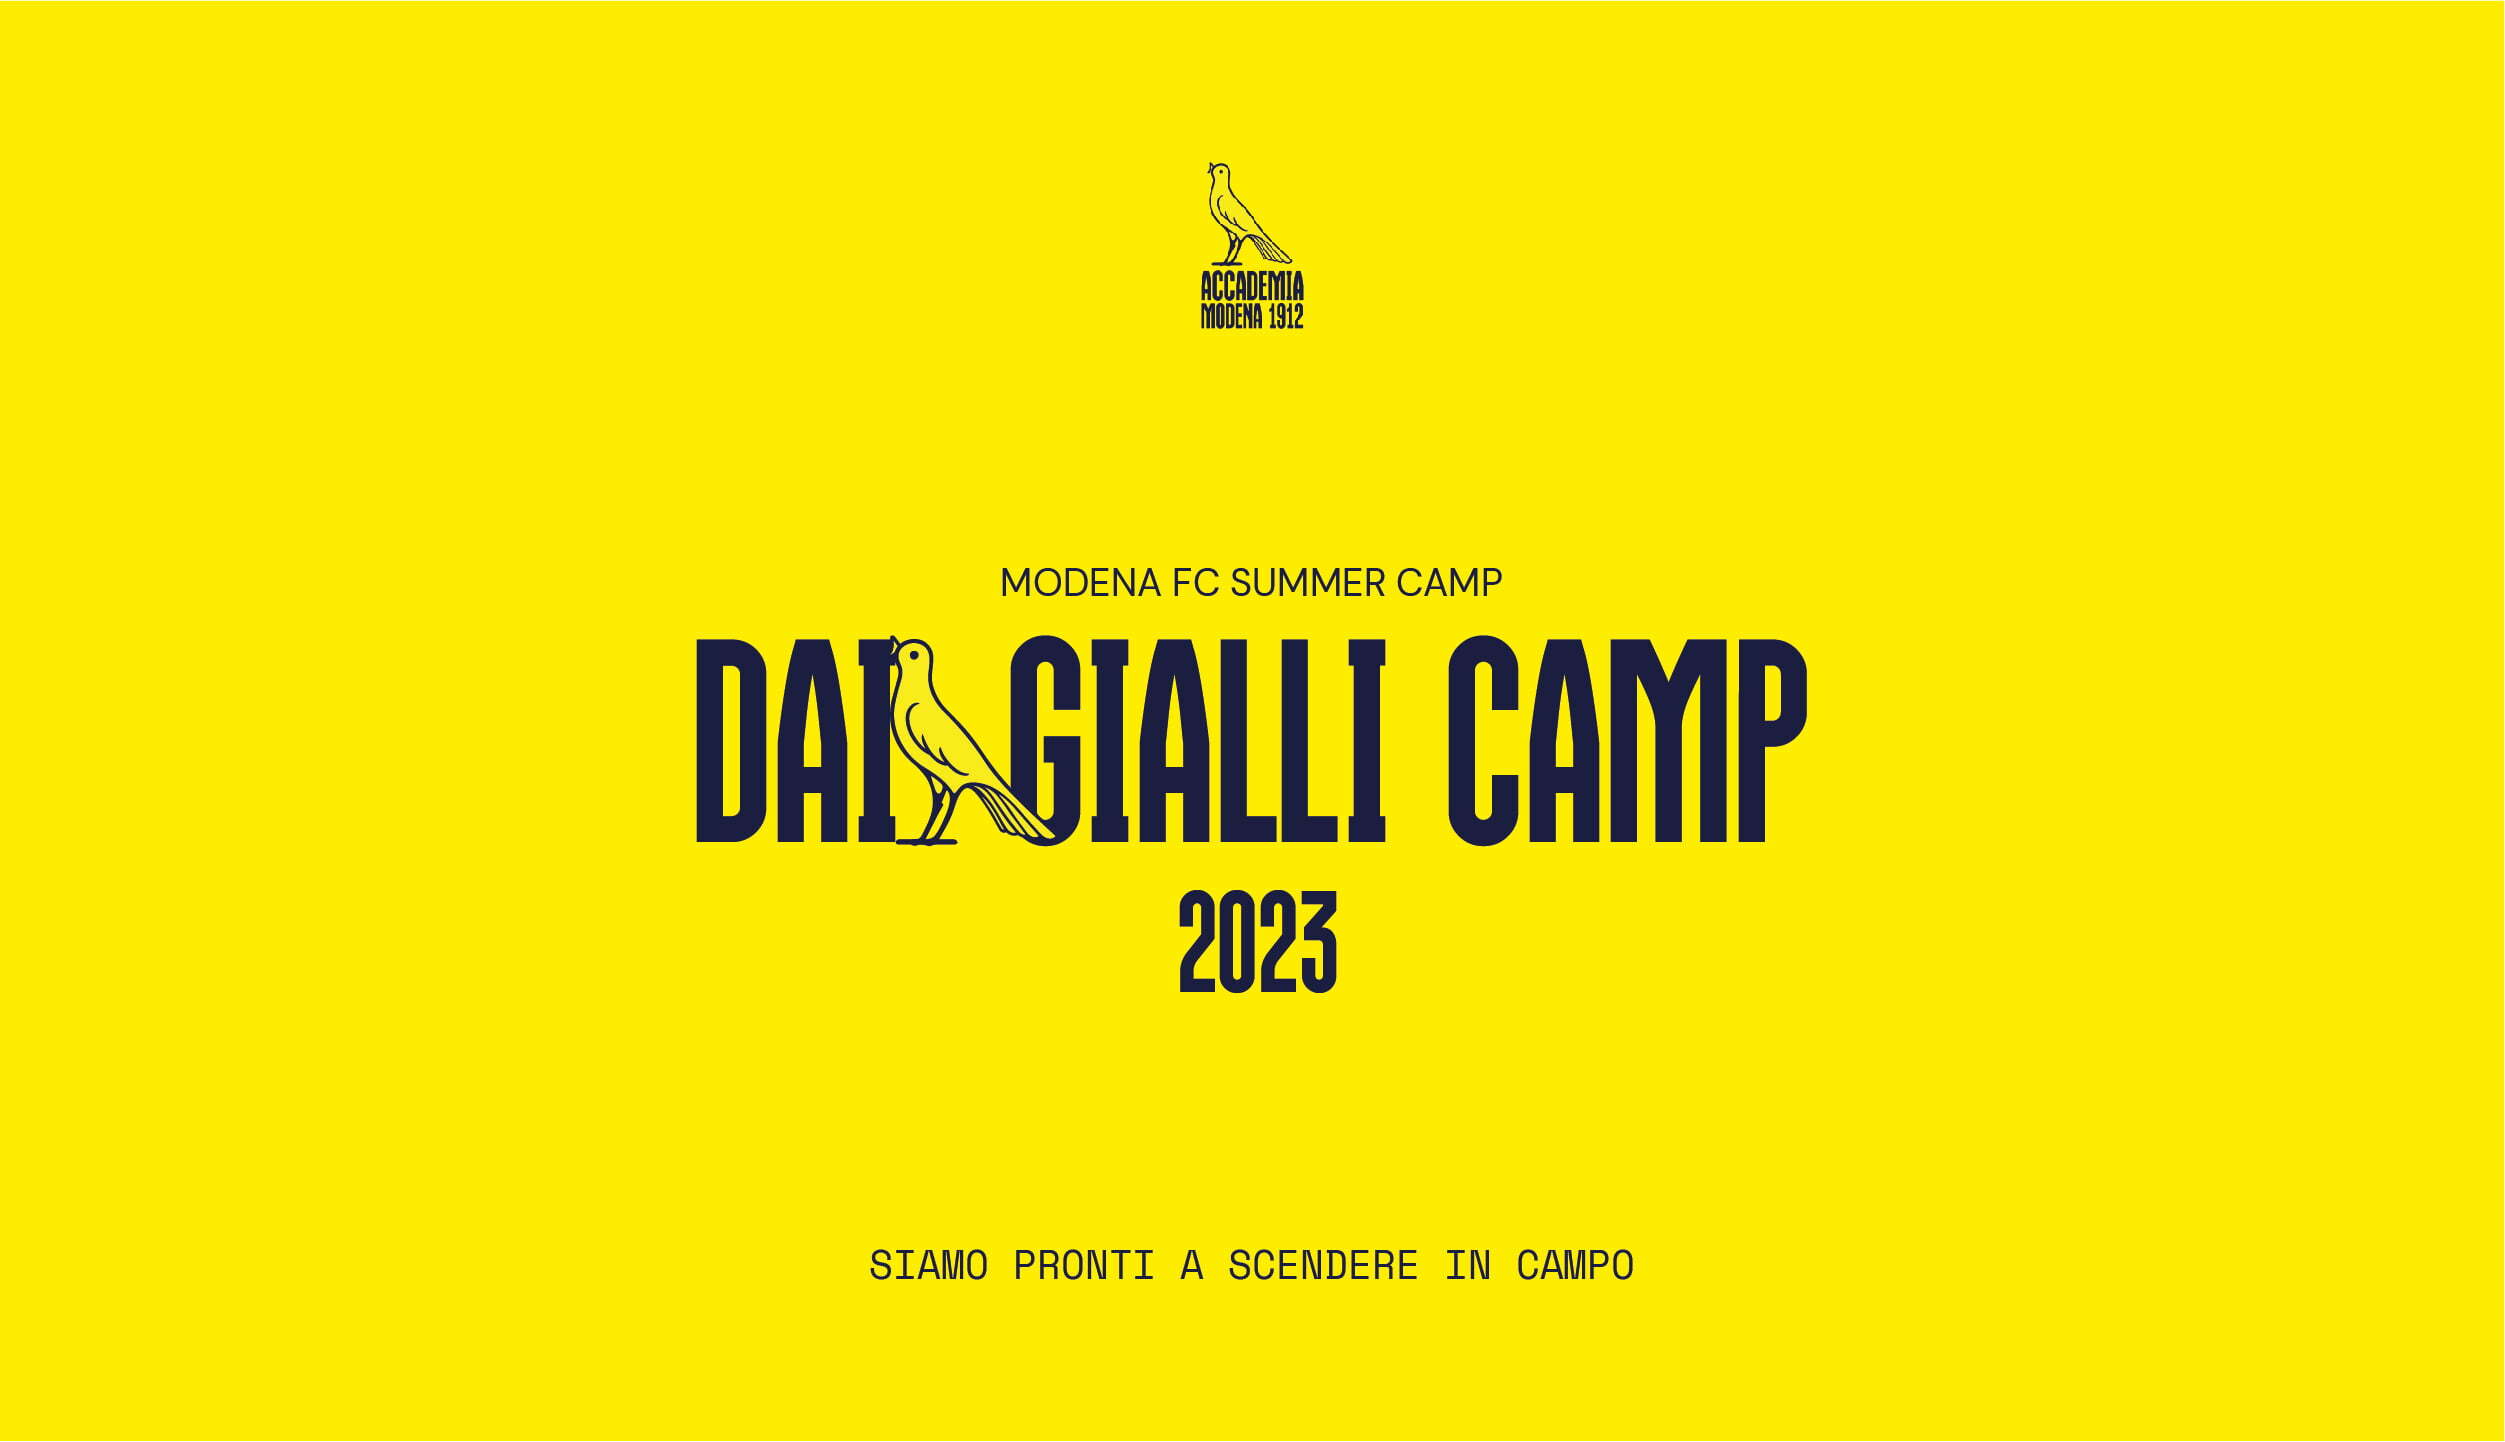 DAI GIALLI CAMP 2023: SI PARTE